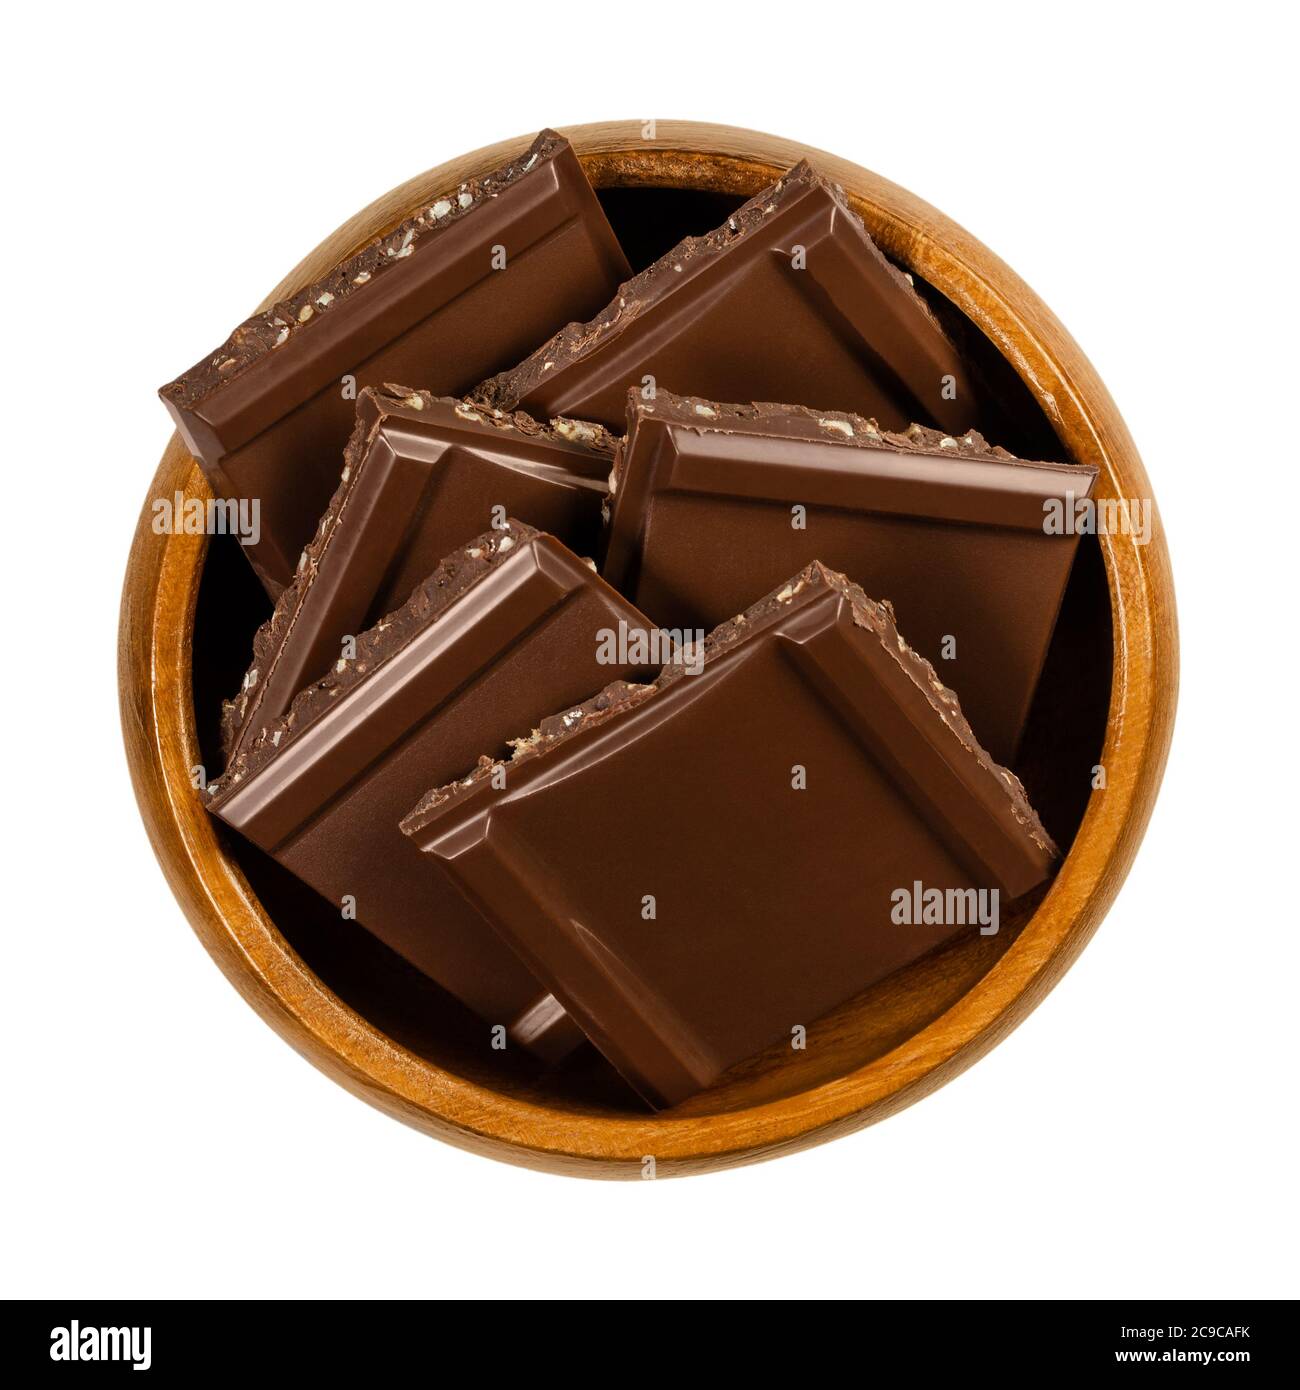 Dunkle Nussschokolade, in quadratische Stücke geschnitten, in einer Holzschale. Schwarze Schokolade mit feinen Nußstückchen, verzehrfertig als süß und leicht bitter Stockfoto